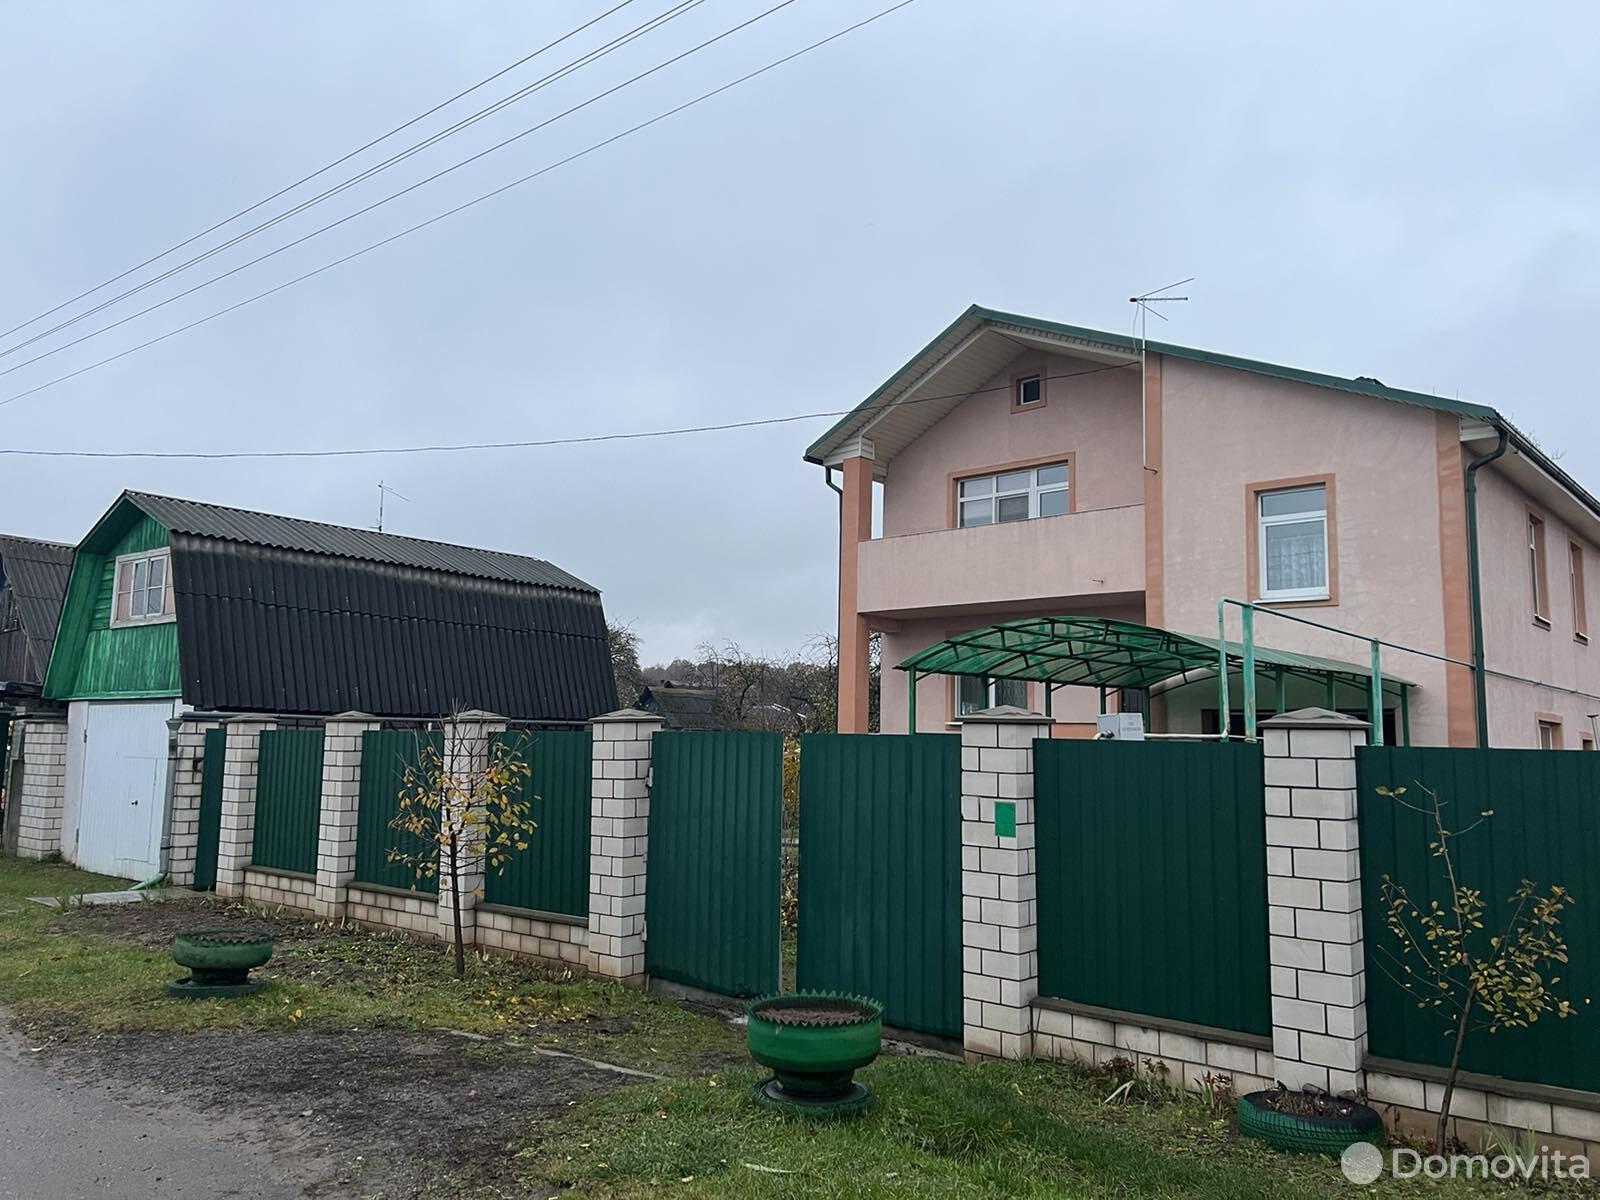 Продать 1-этажный дом в Могилеве, Могилевская область пер. Качалова, д. 29, 120000USD - фото 1